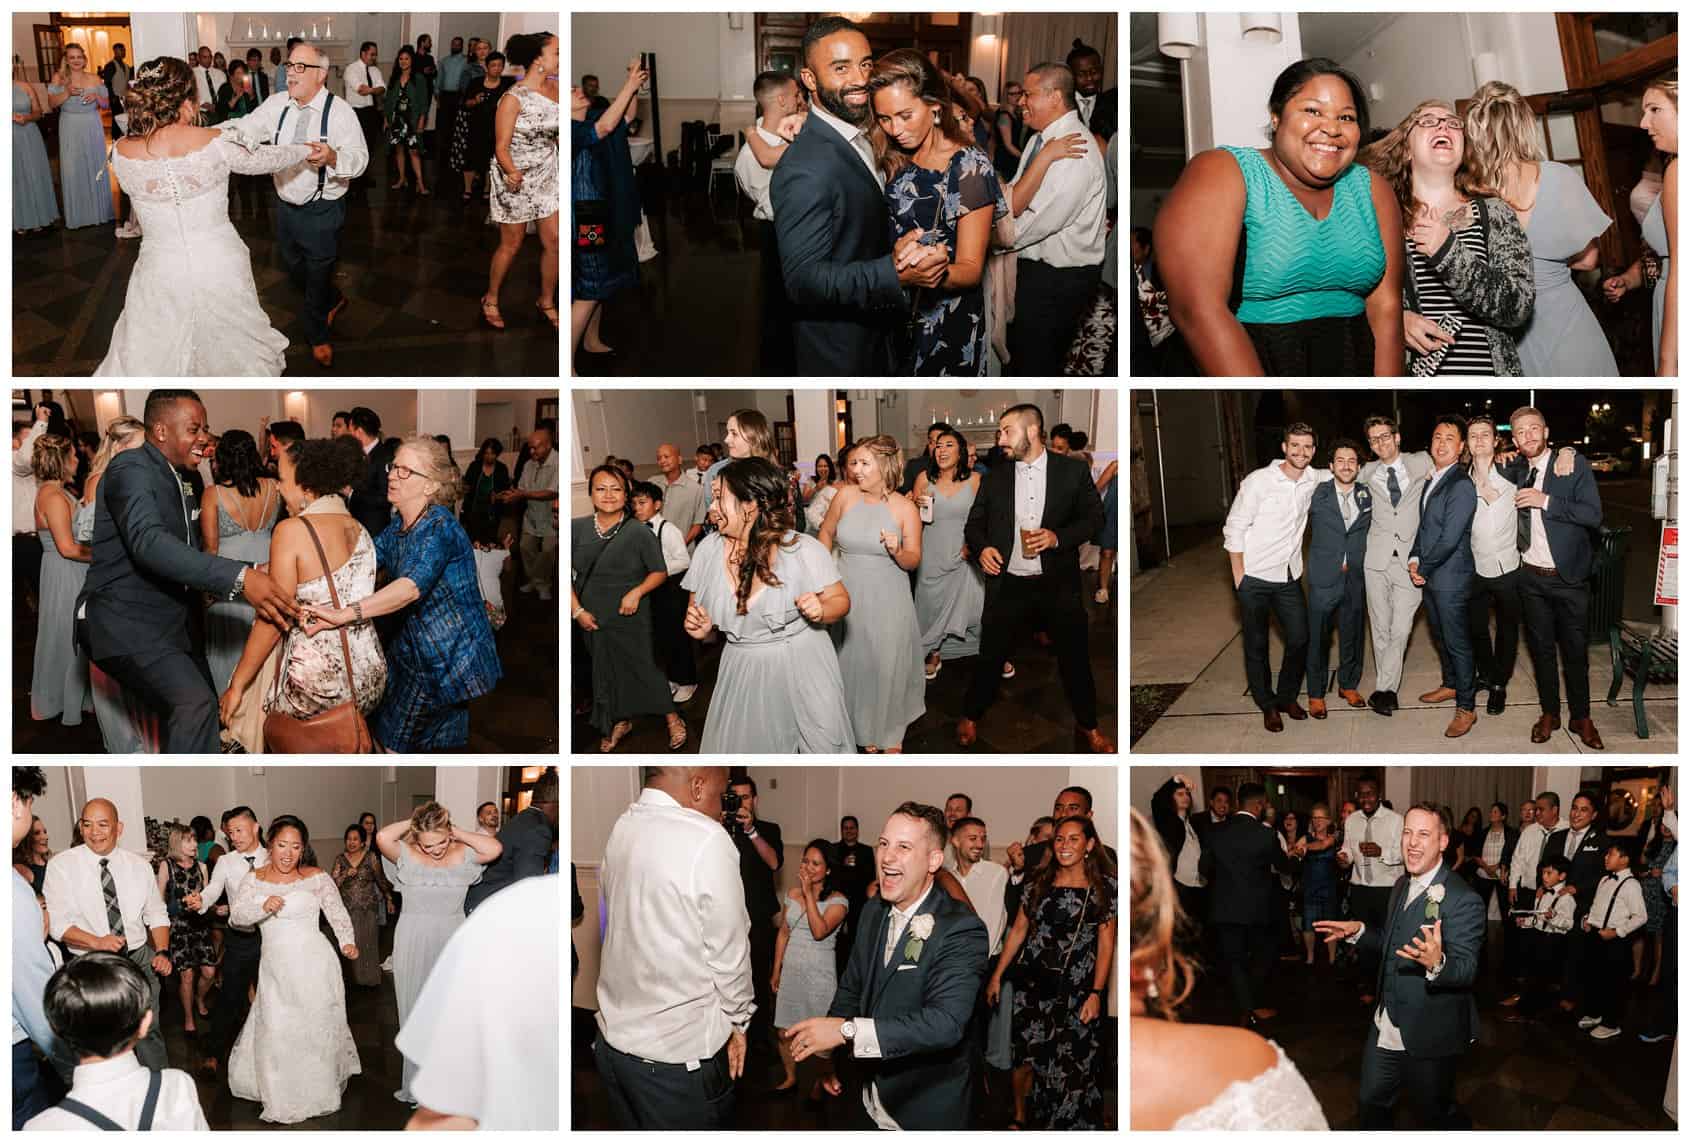 Monte Cristo Ballroom wedding reception photos by Luma Weddings